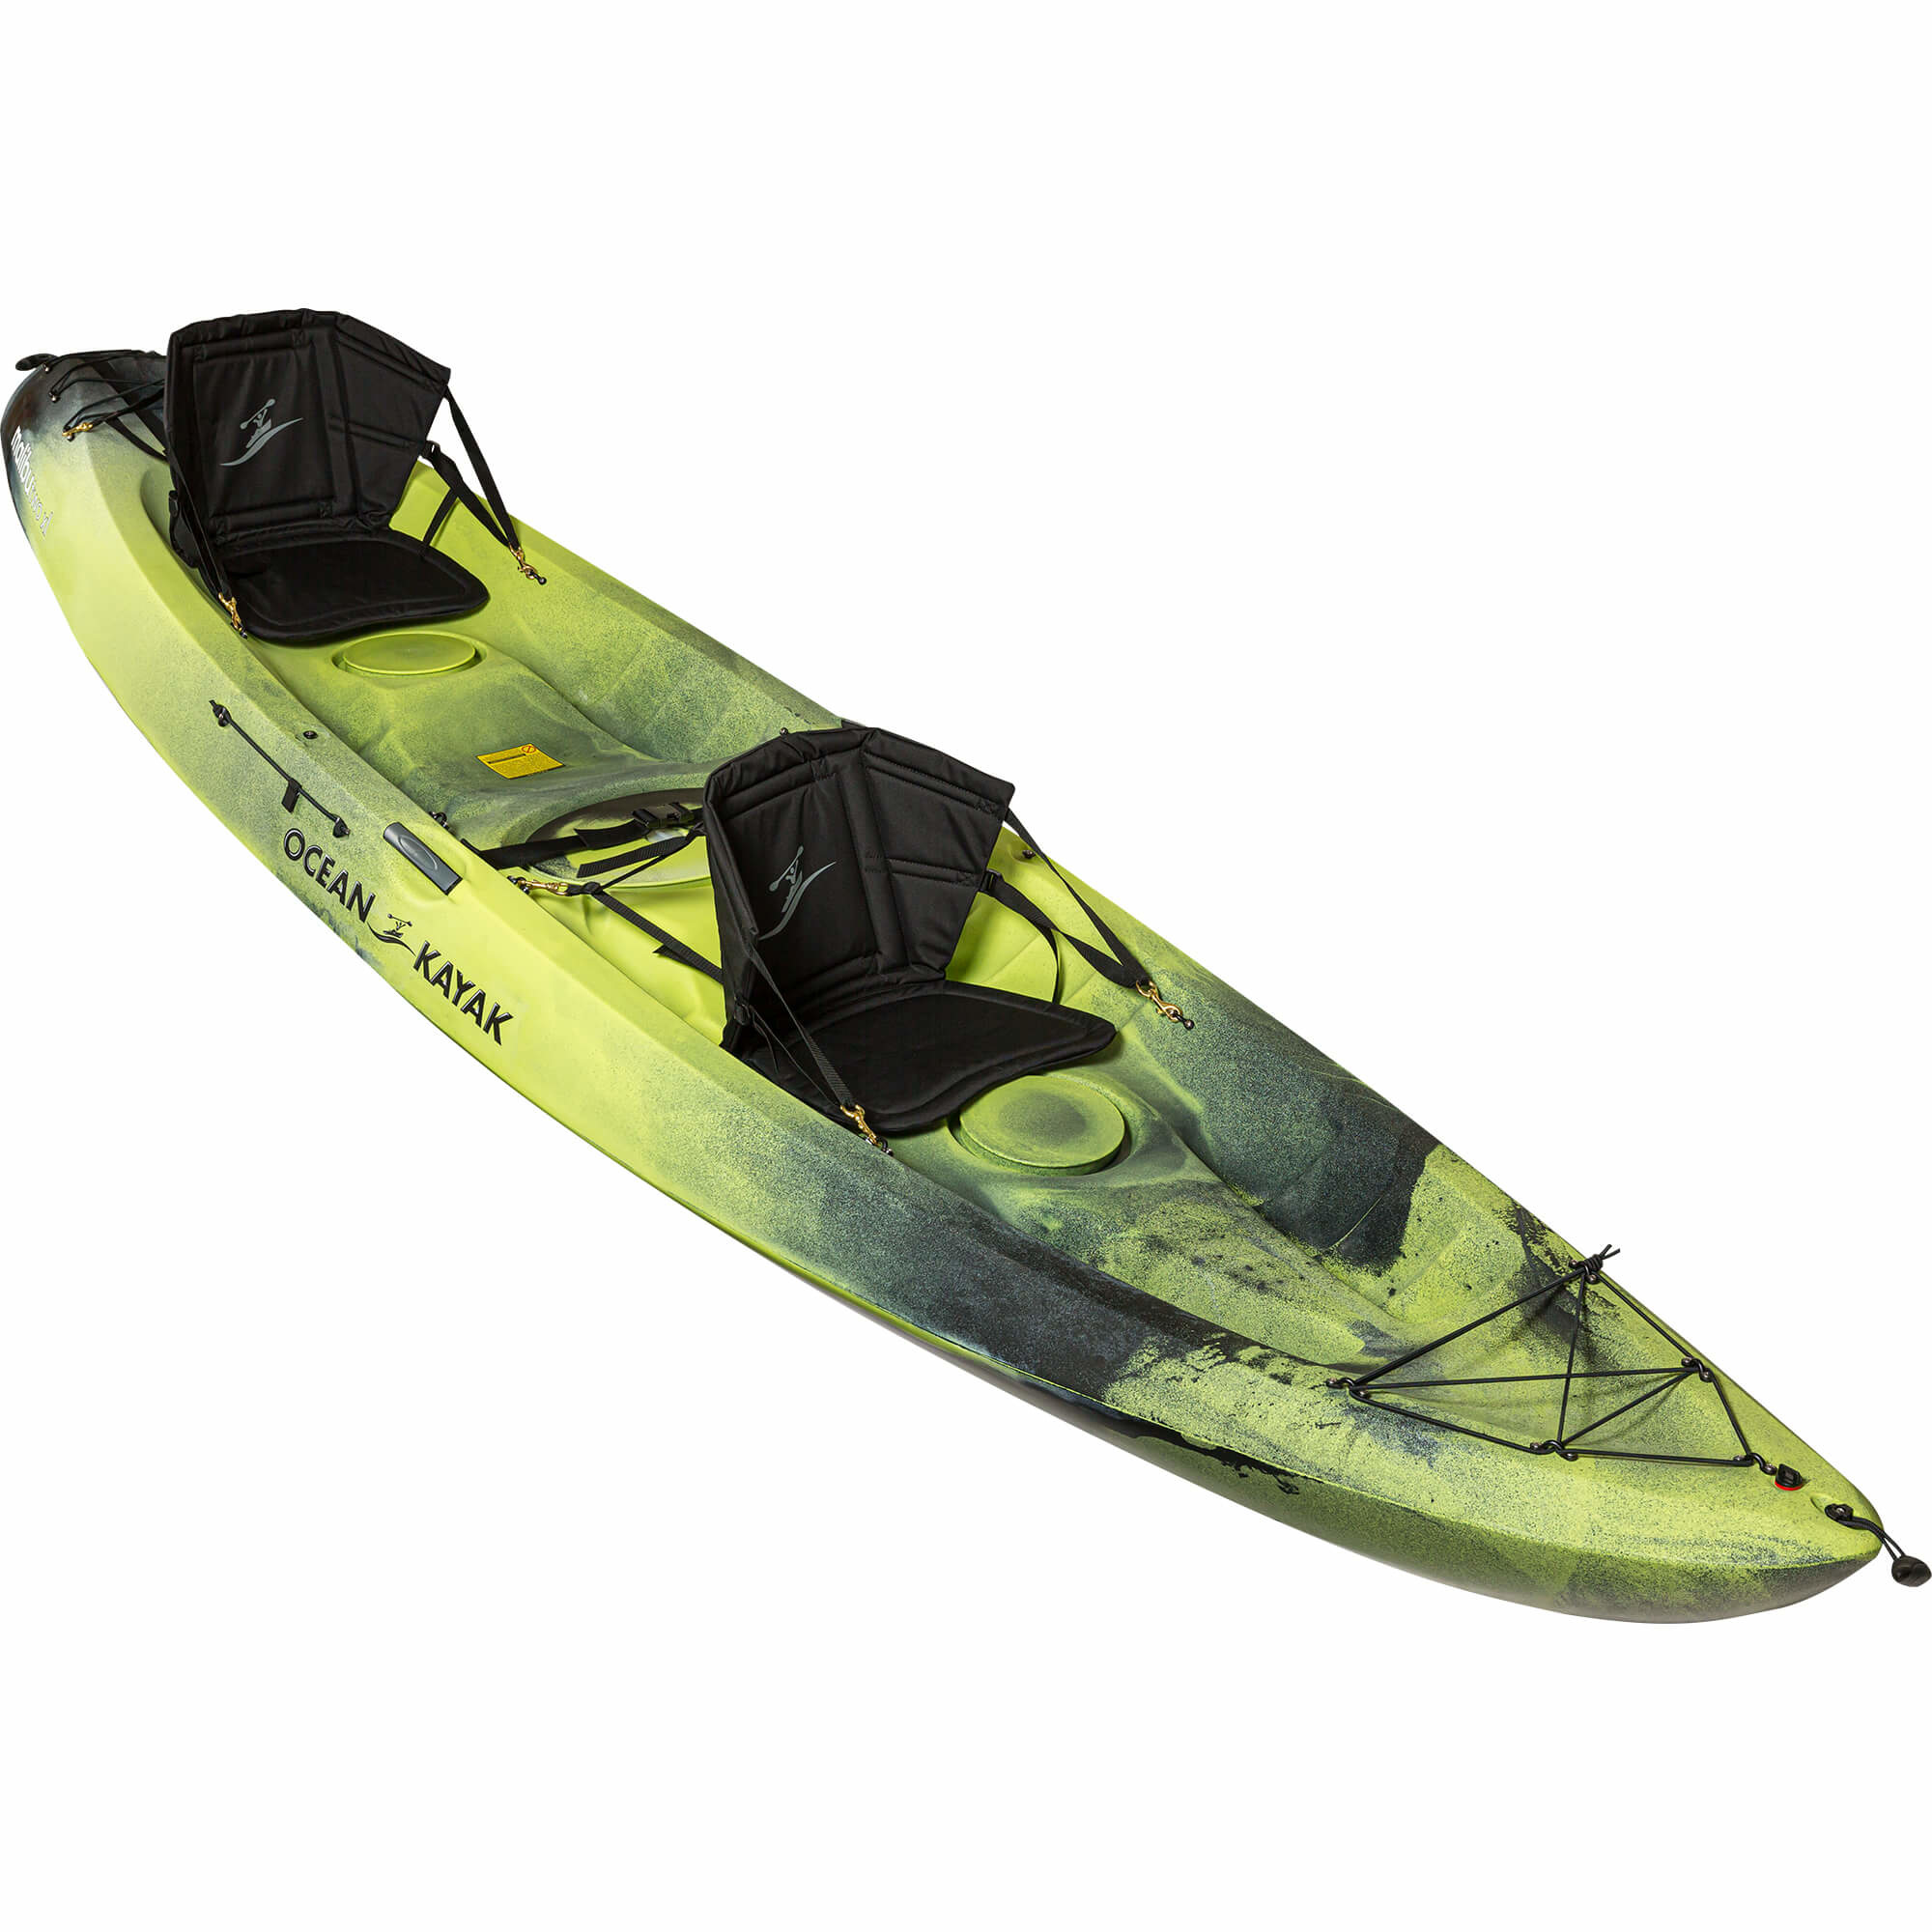 Ocean Kayak Malibu Two Xl Kayak